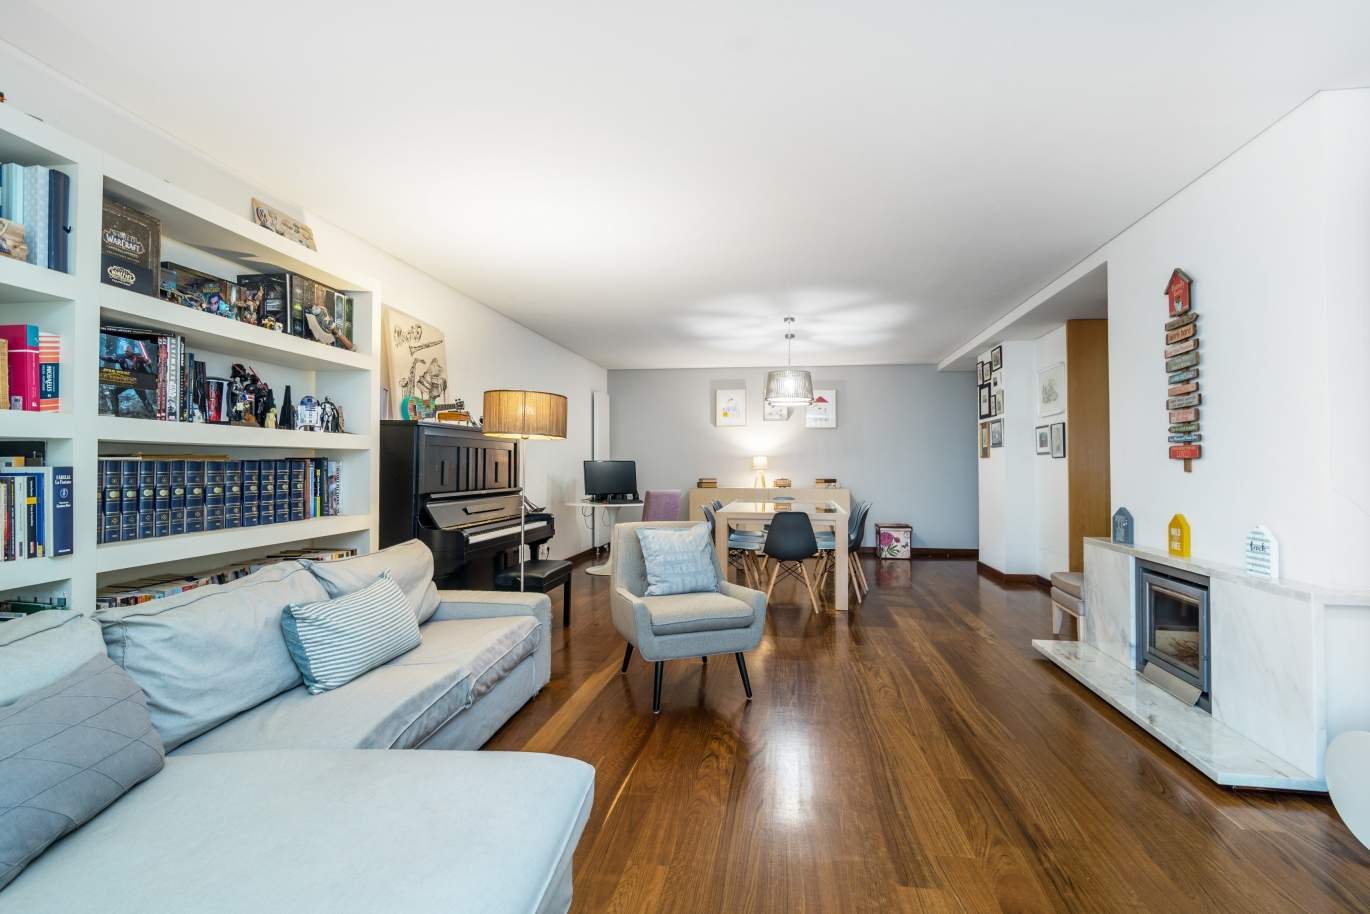 Sale apartment in private condominium w/ river views, Porto, Portugal_121026